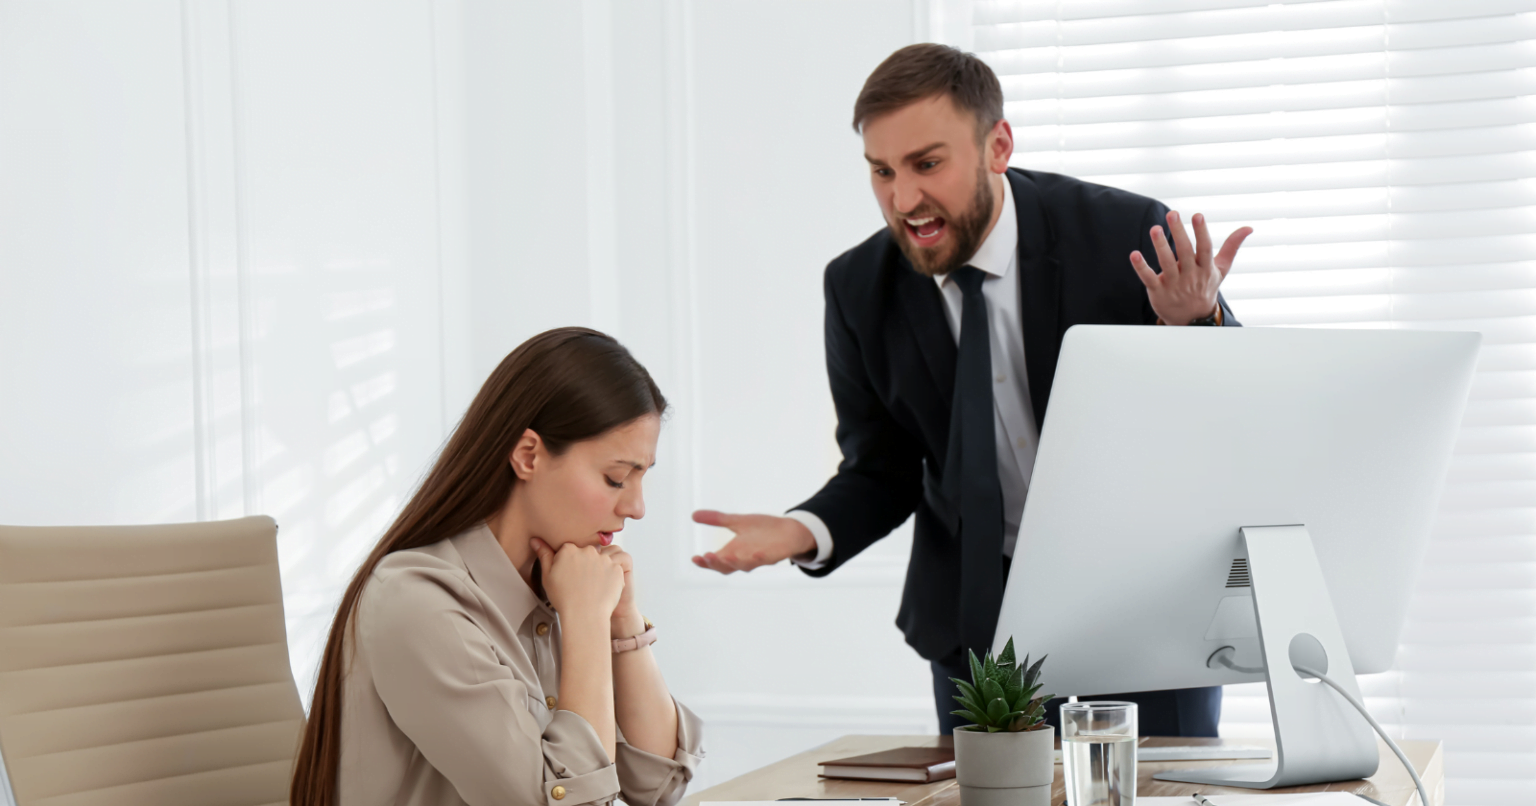 Se você tolerar esses 8 comportamentos do seu chefe, você não terá respeito próprio